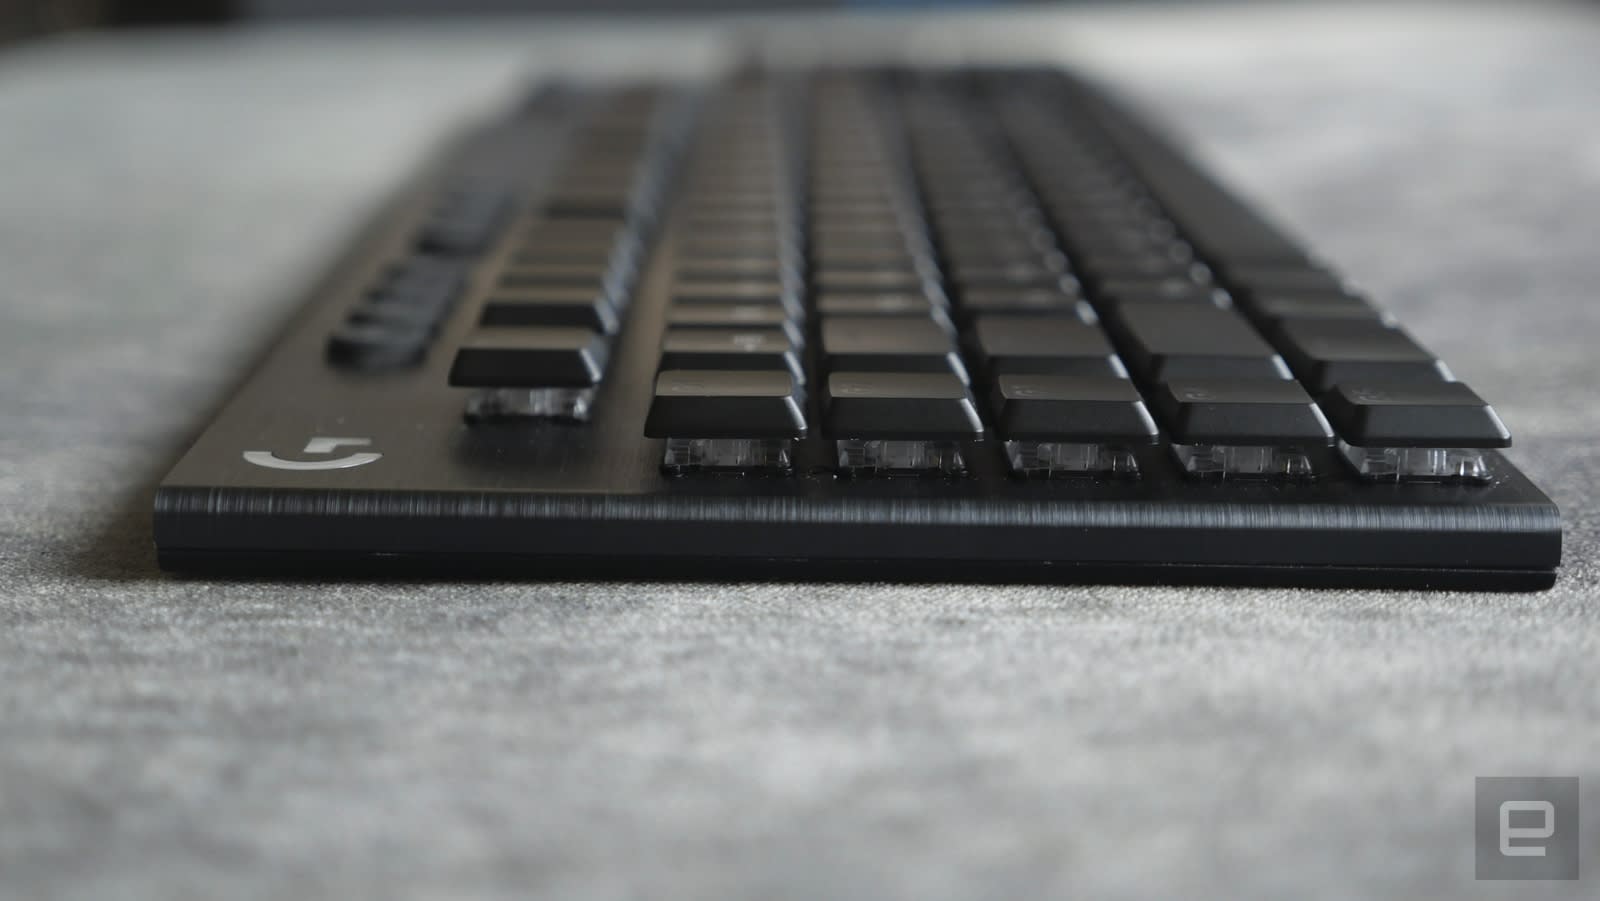 Logitech G813 / G913 薄型機械遊戲鍵盤